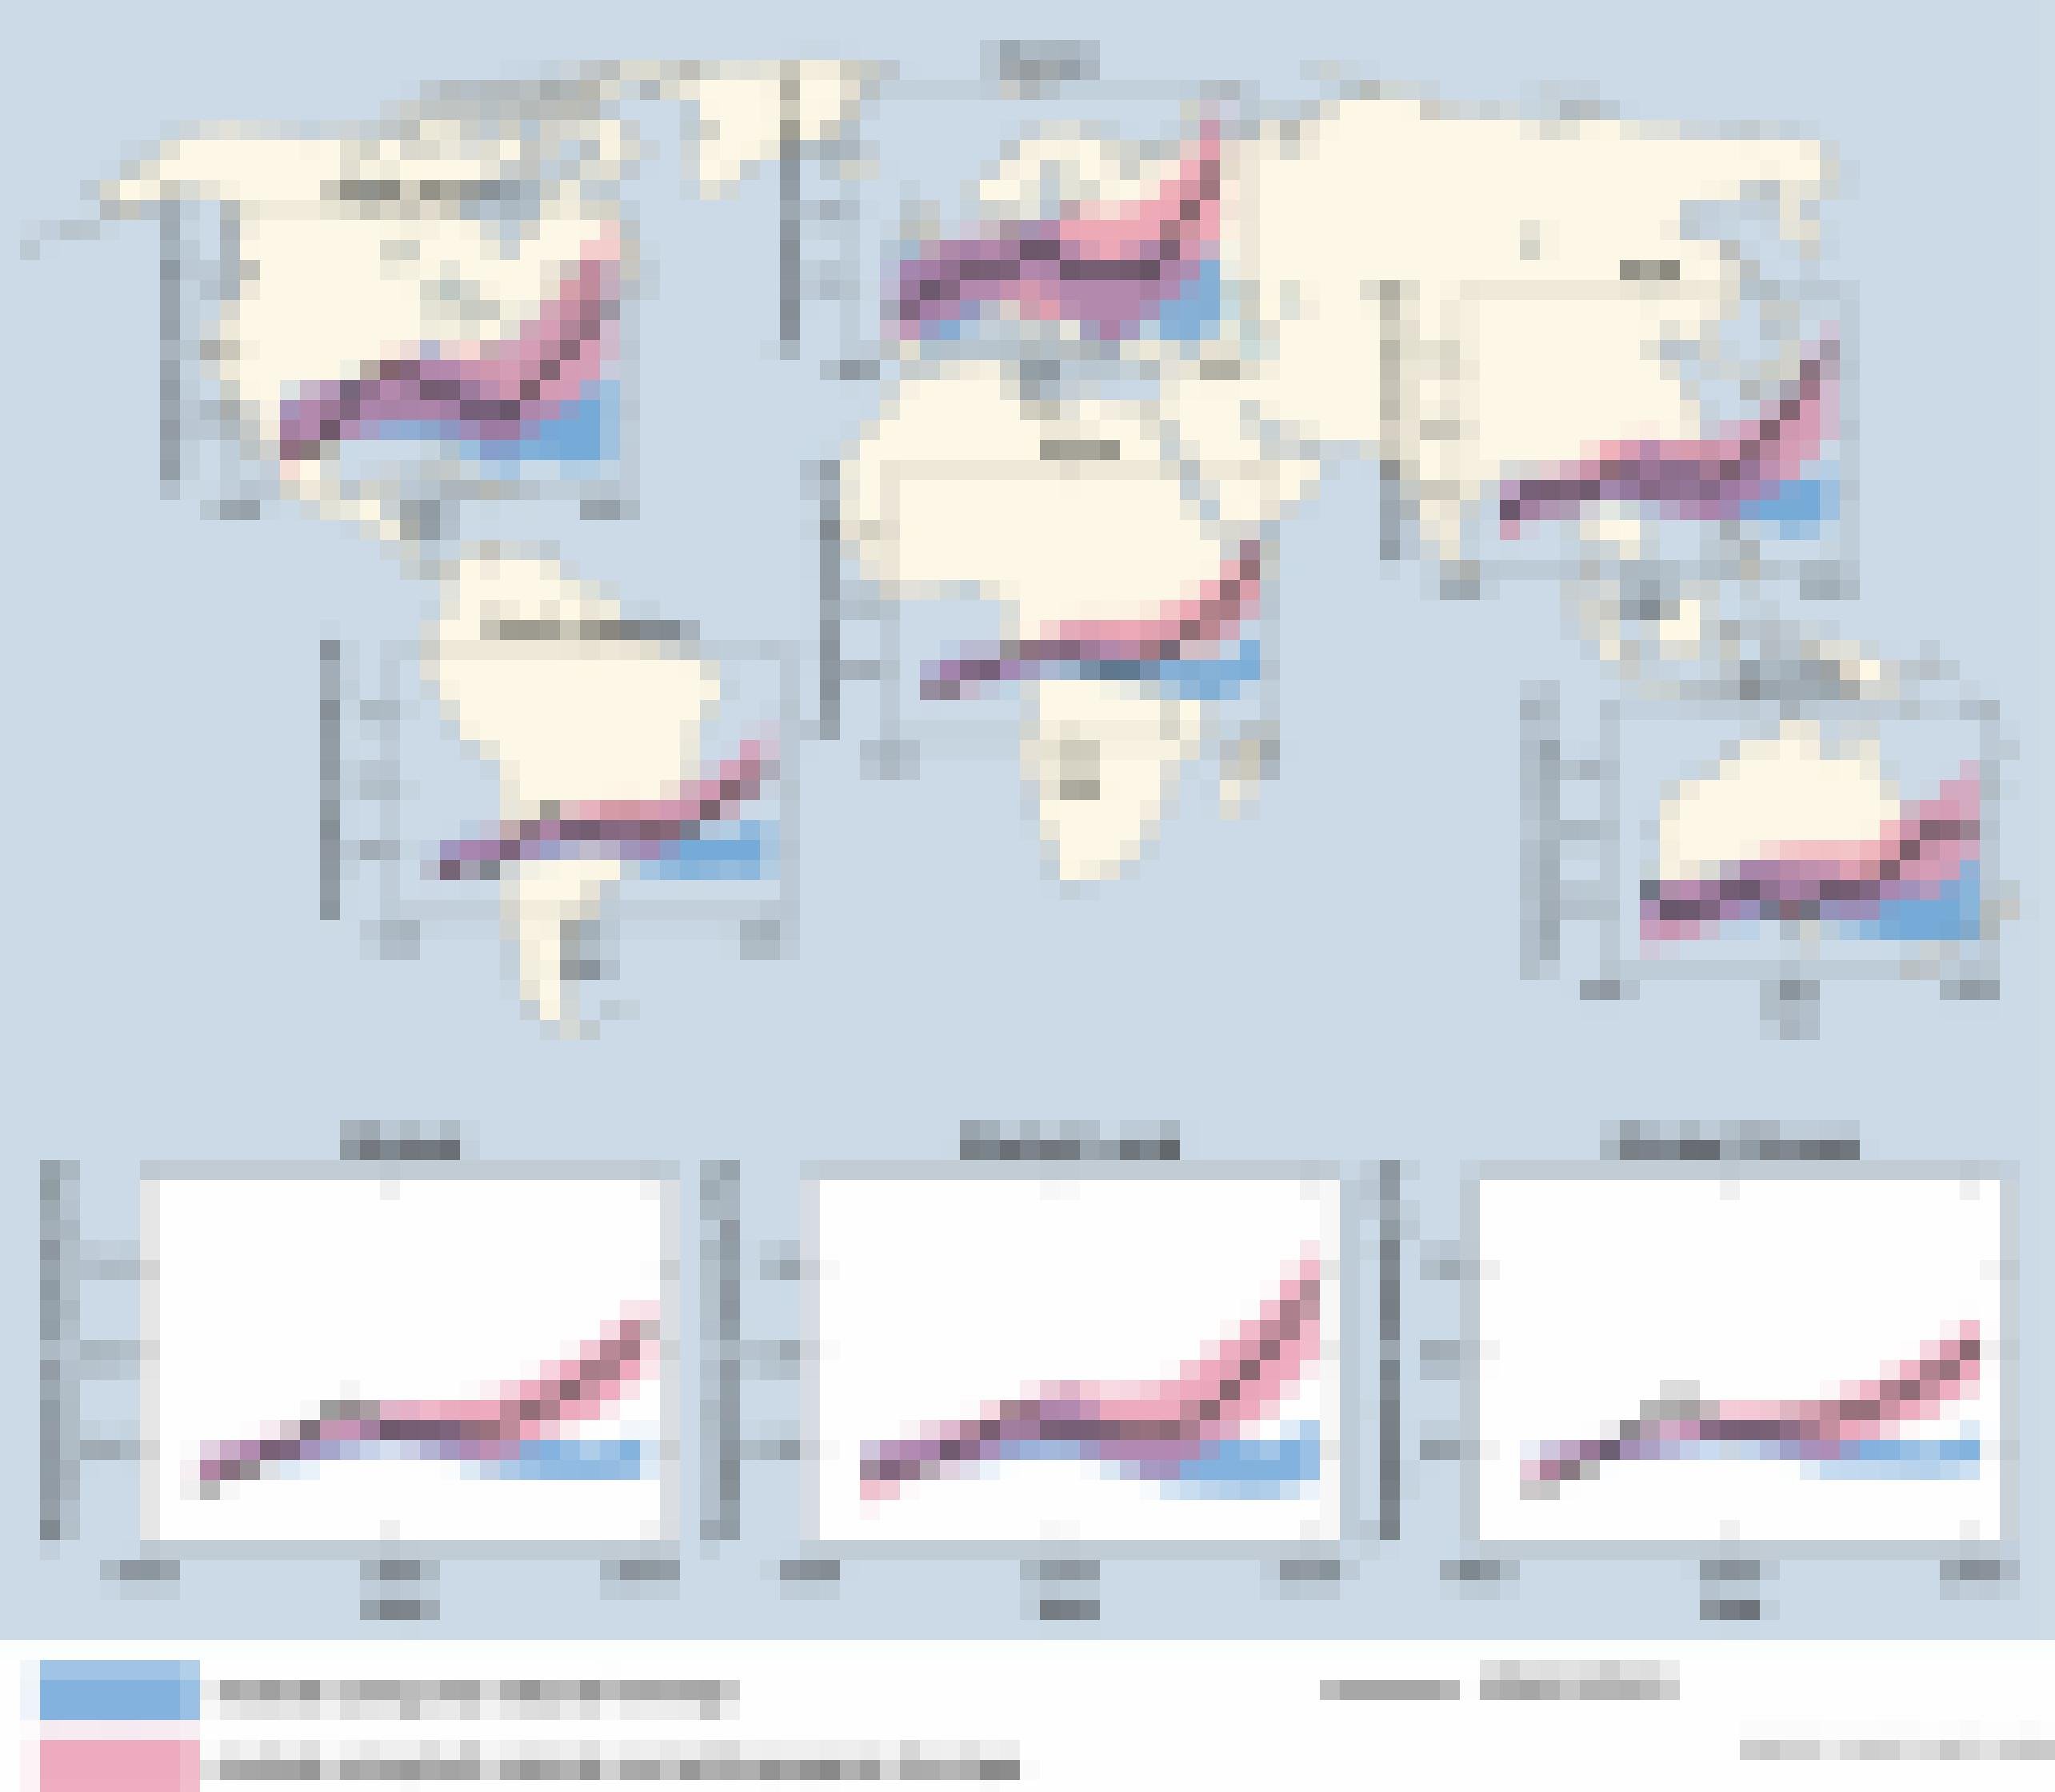 IPCC-Grafik aus dem Bericht von 2007. Sie enthält insgesamt neun einzelne Felder: Sechs stehen für die Temperaturen der Erdteile, je eines für Landflächen und Ozeane und eines für die globale Mitteltemperatur. Die rosa und blauen Bänder trennen sich jeweils etwa in der Mitte. Ab hier streben die rosa Bänder und schwarzen Linien gemeinsam nach oben, während die blaue Bänder weiter unten bleibt.